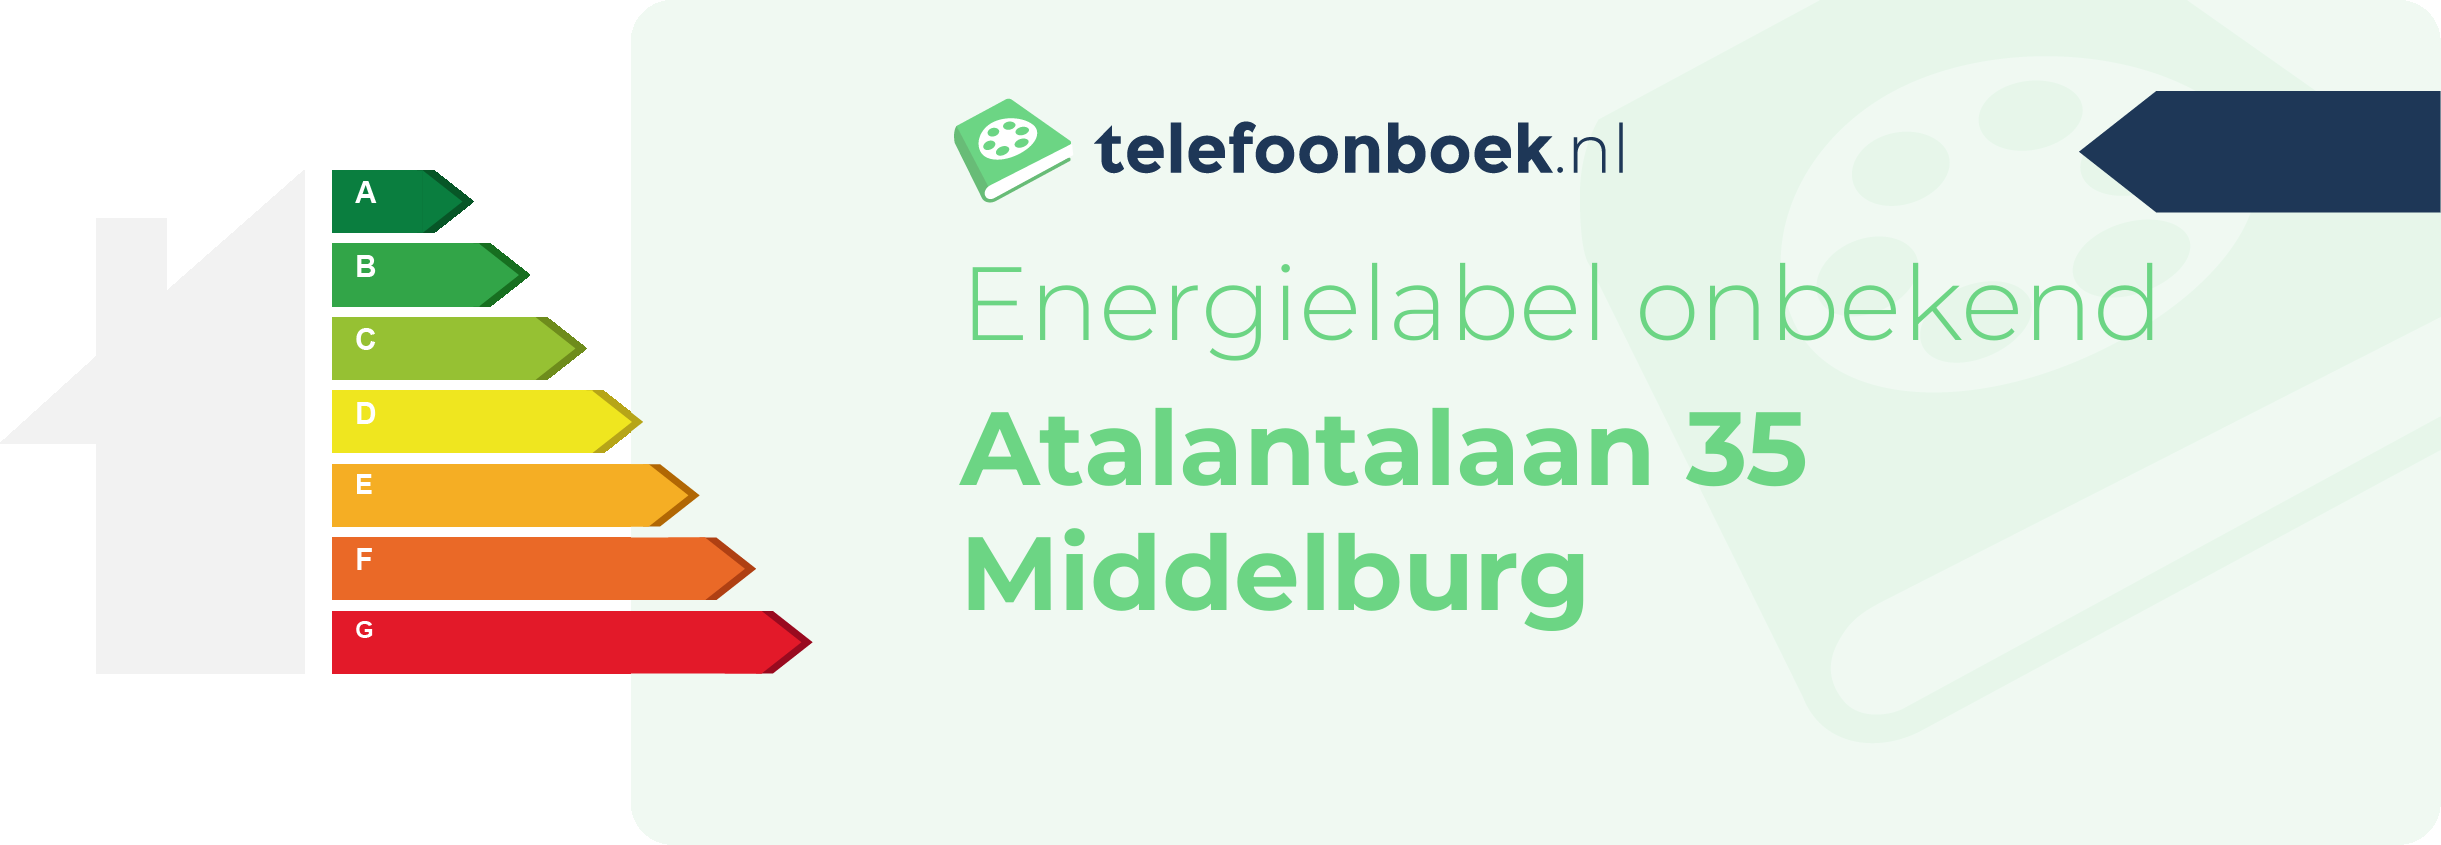 Energielabel Atalantalaan 35 Middelburg